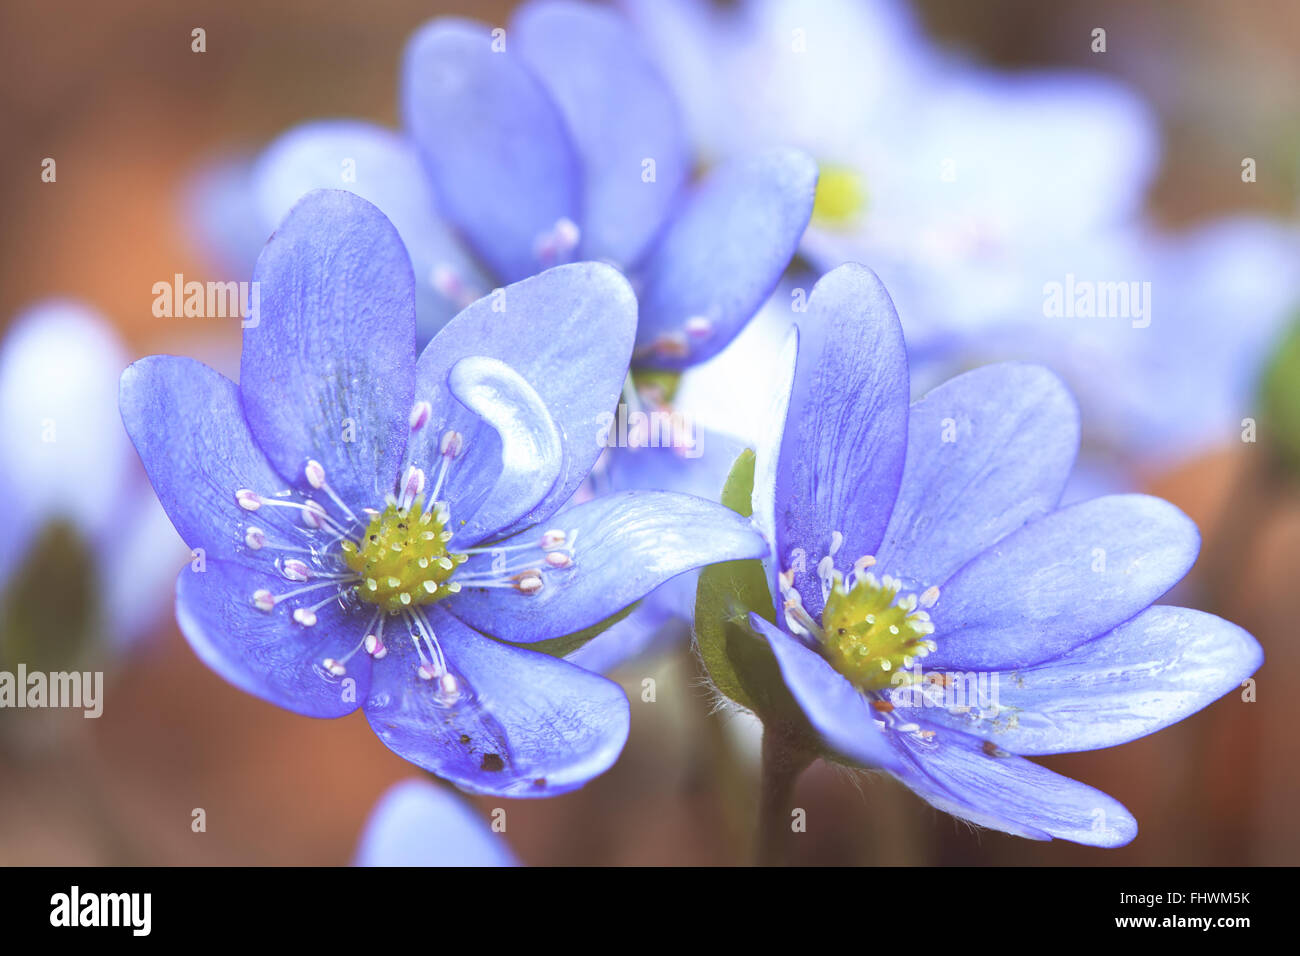 Début du printemps bleu fleurs hepatica ou snowdrop dans son contexte naturel poussant sur un sol forestier. Image printemps rural naturel Banque D'Images